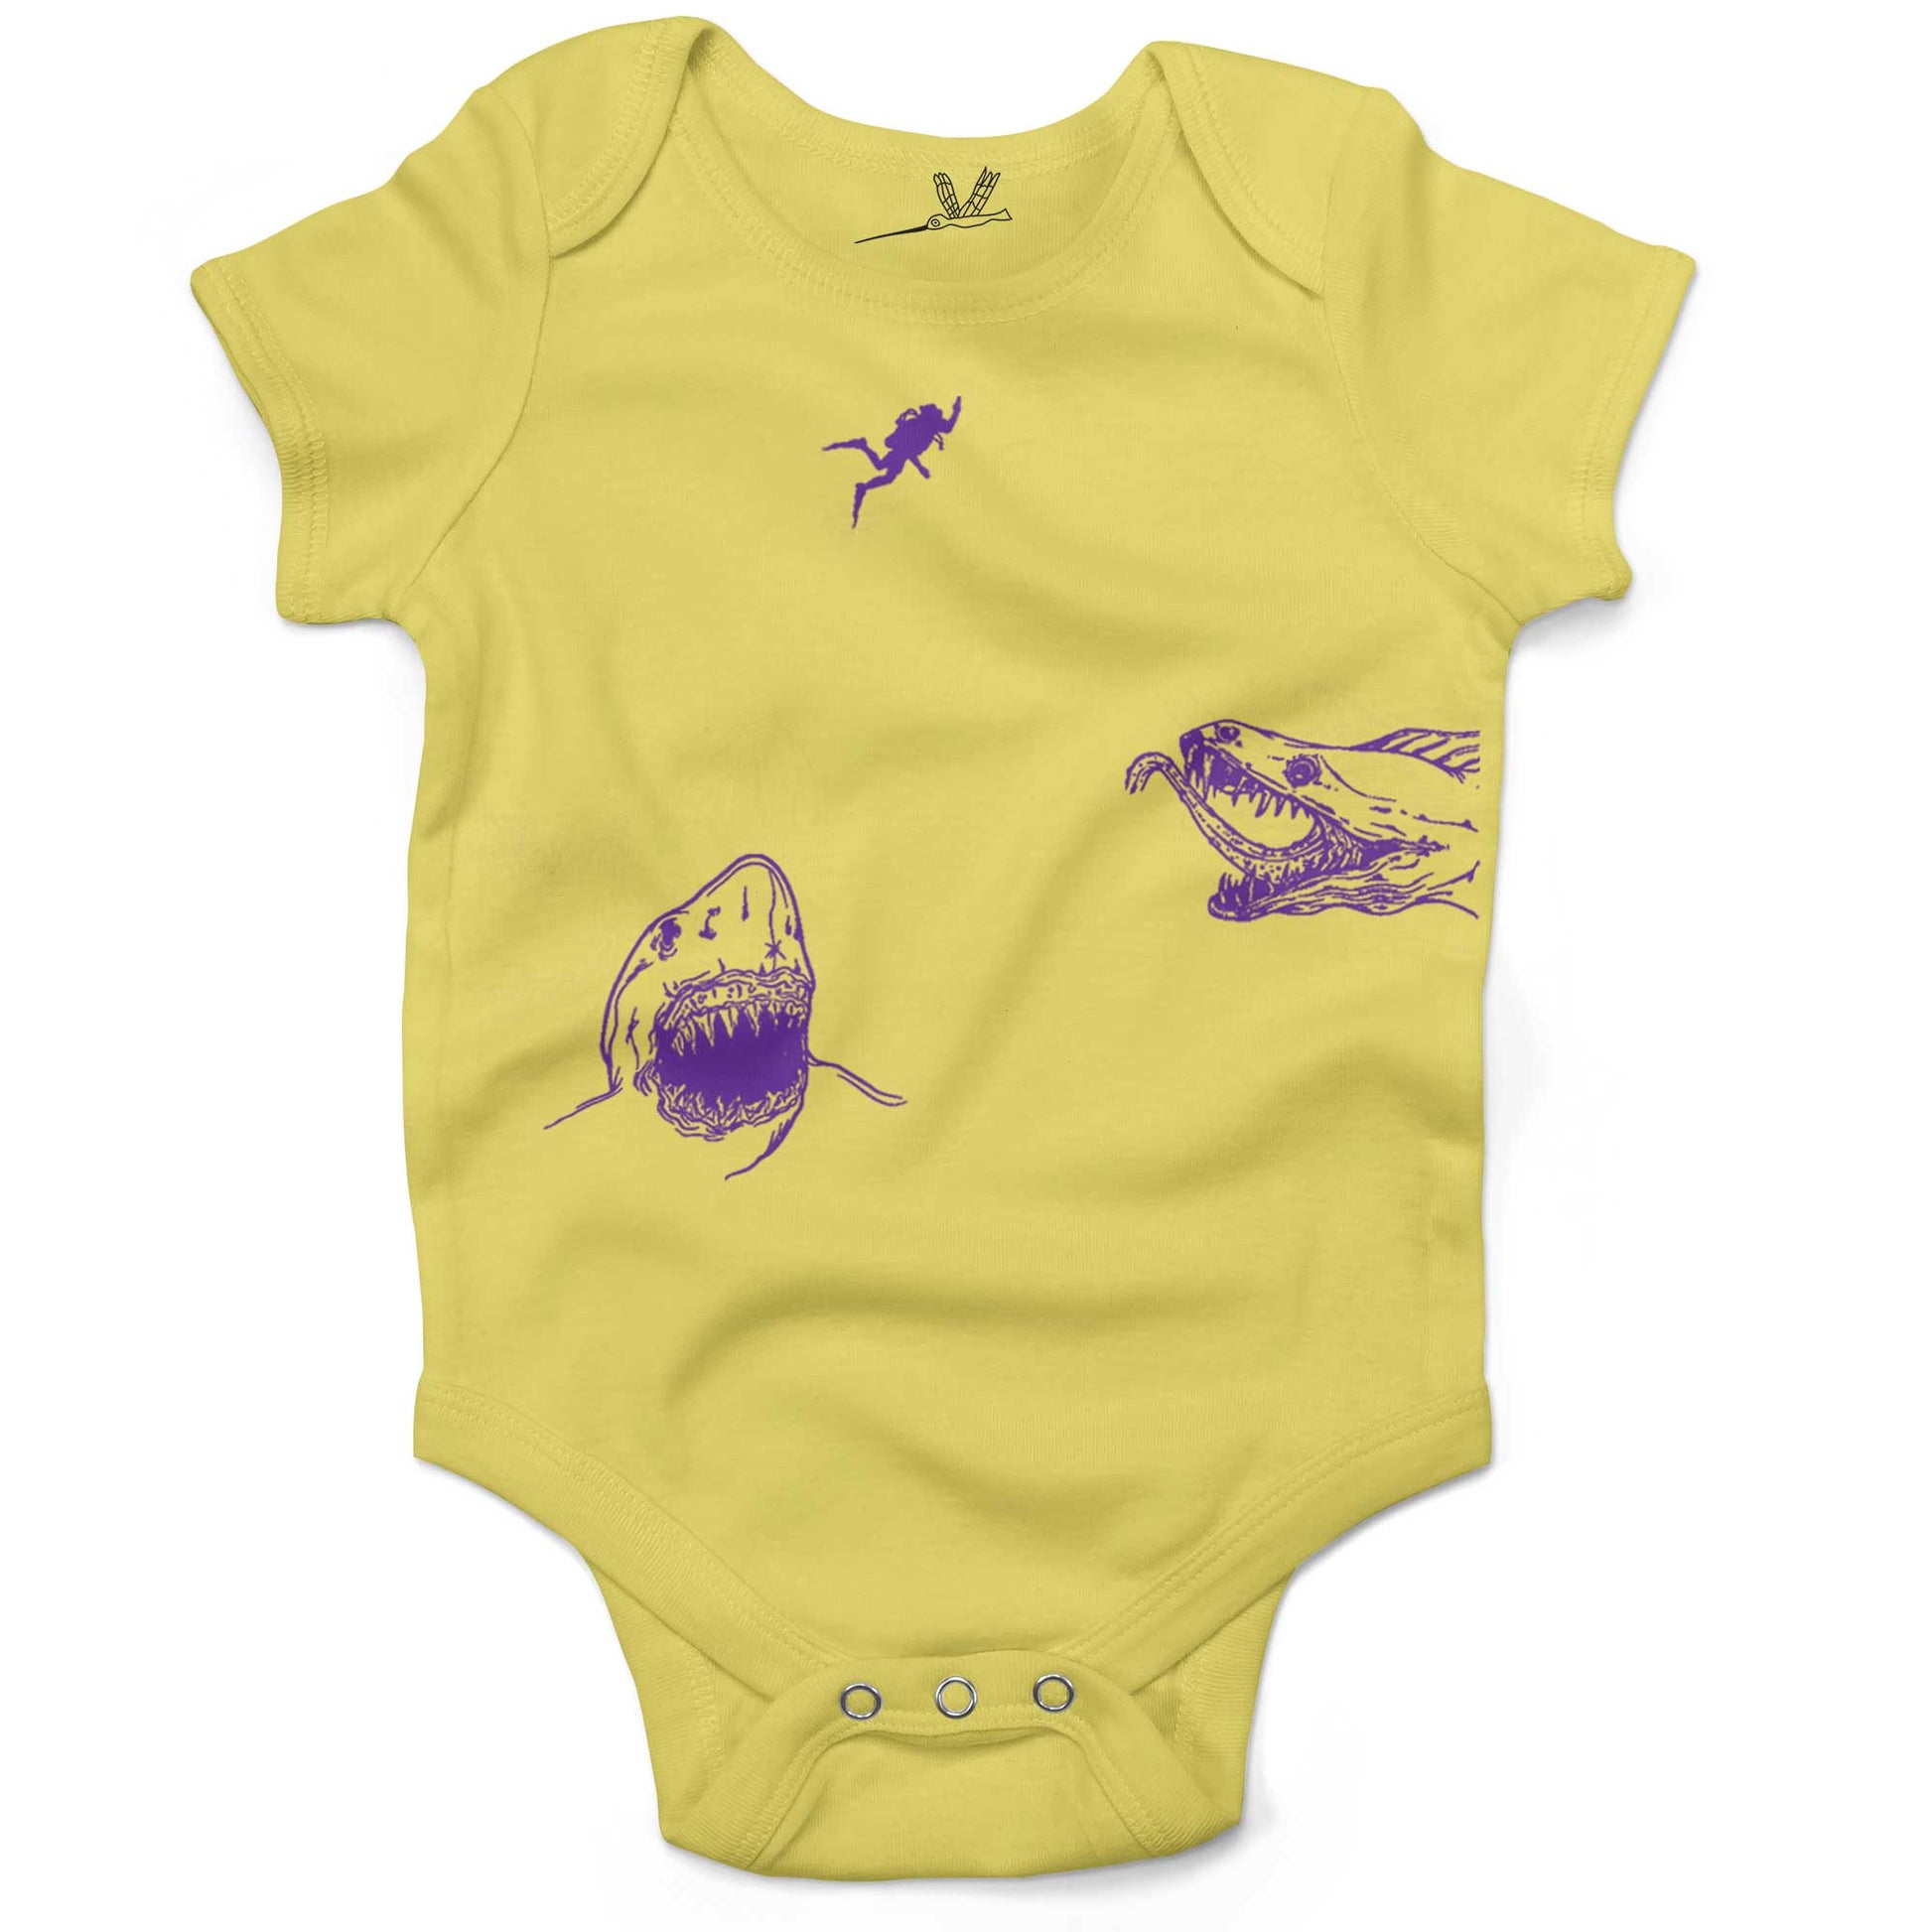 Scuba Diving Infant Bodysuit-Yellow-3-6 months